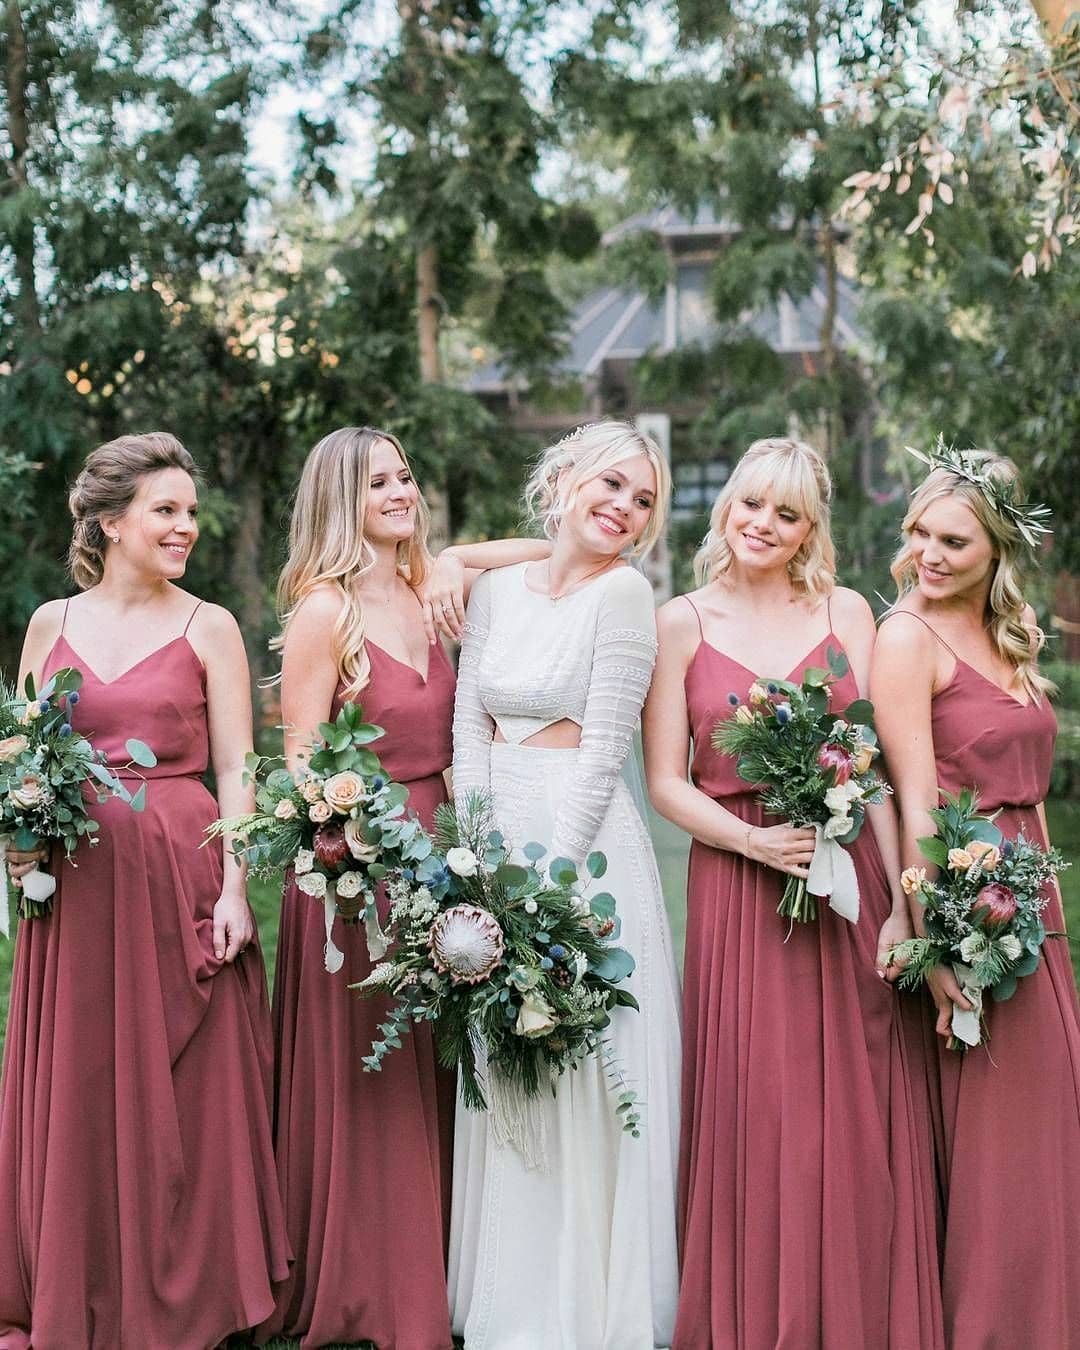 happy bridesmaids surround a bride in a wedding dress